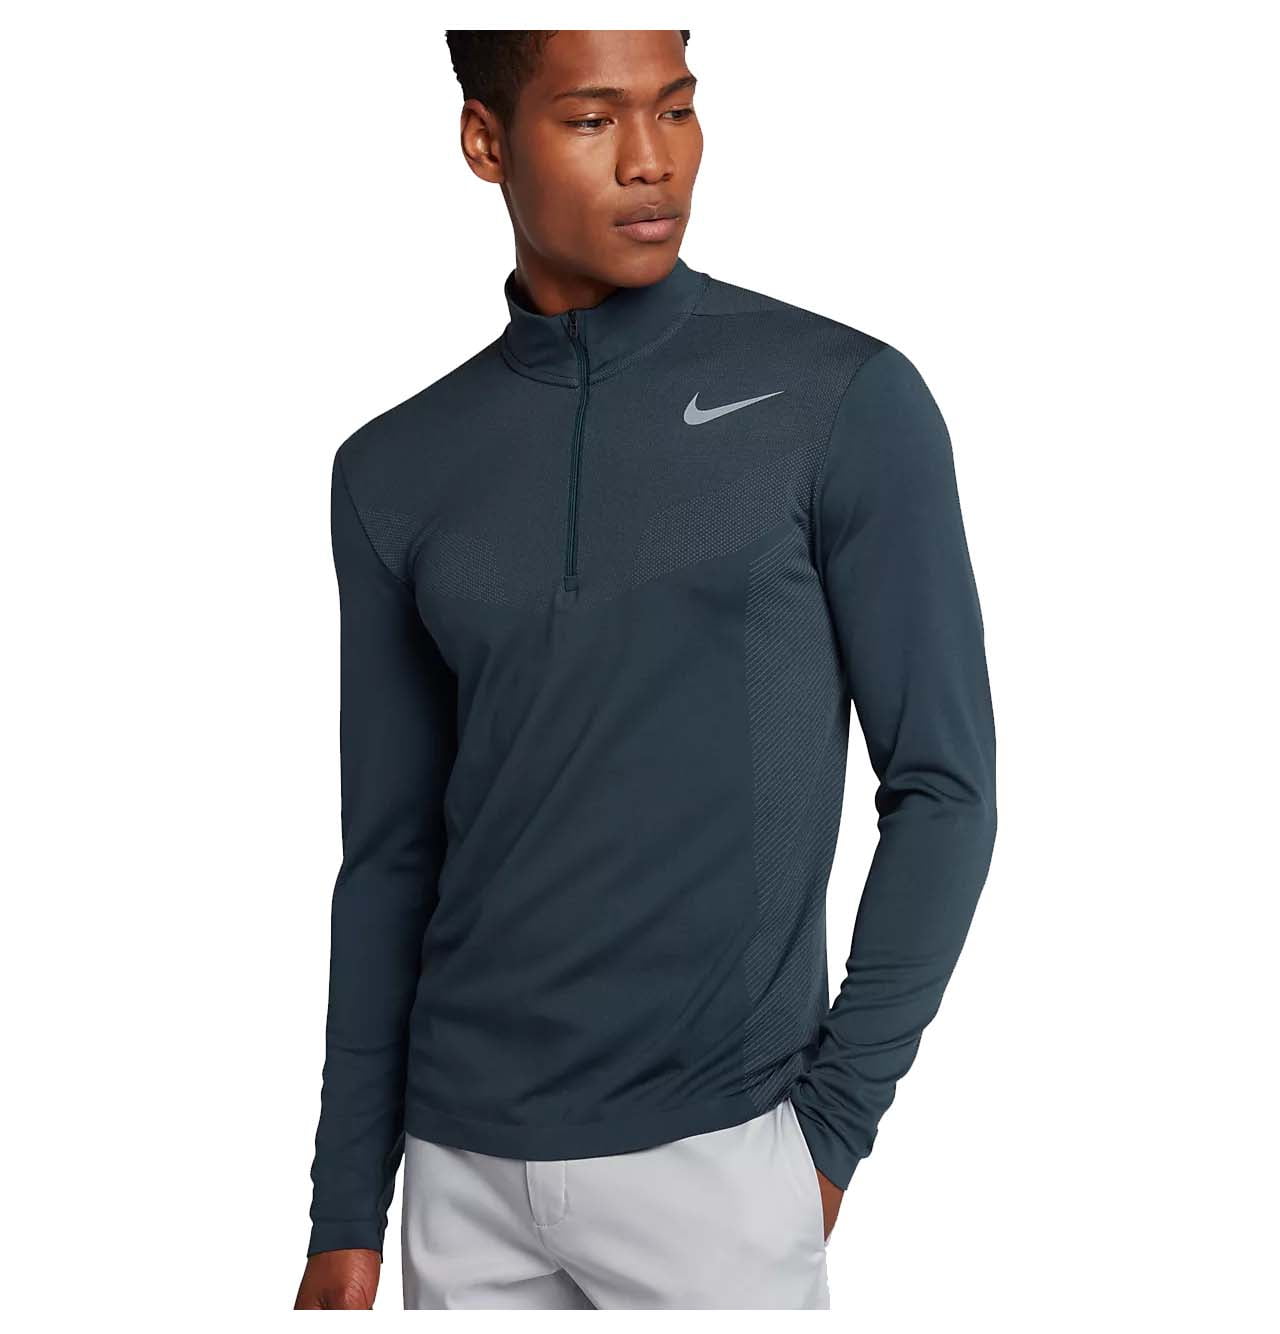 Nike - Nike Men's Dri-Fit Knit Half Zip Golf Shirt - Walmart.com ...